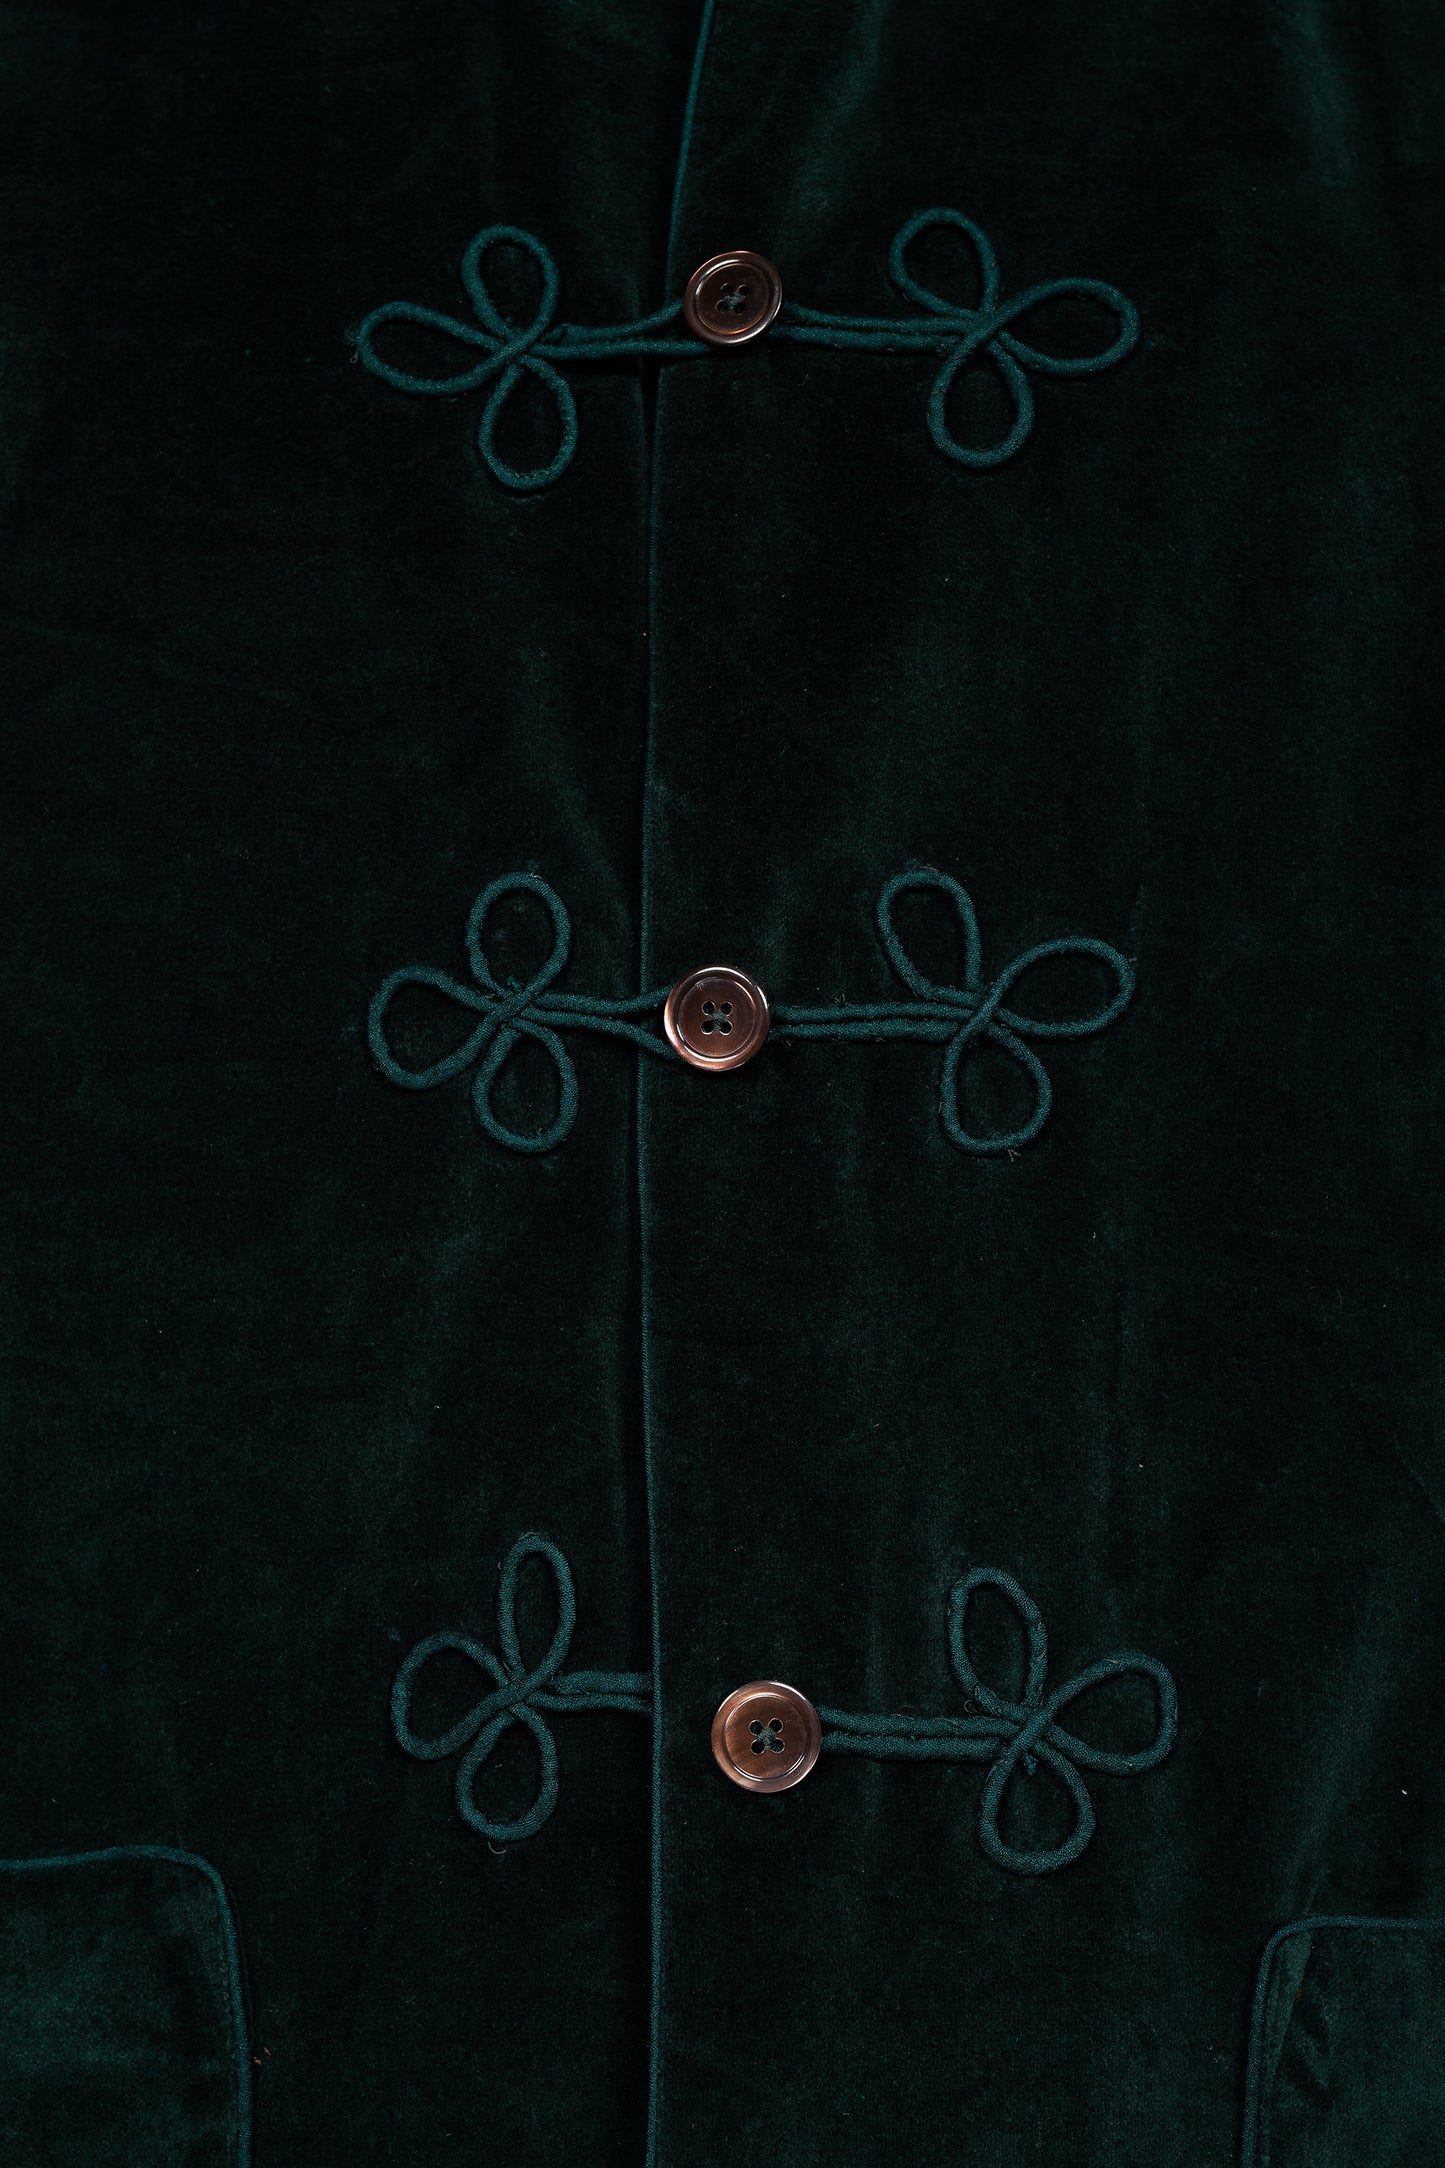 HUSSAR-SHIRT VELVETGREEN with velvetgreen braiding 100% COTTON Velvet fabric-dyed